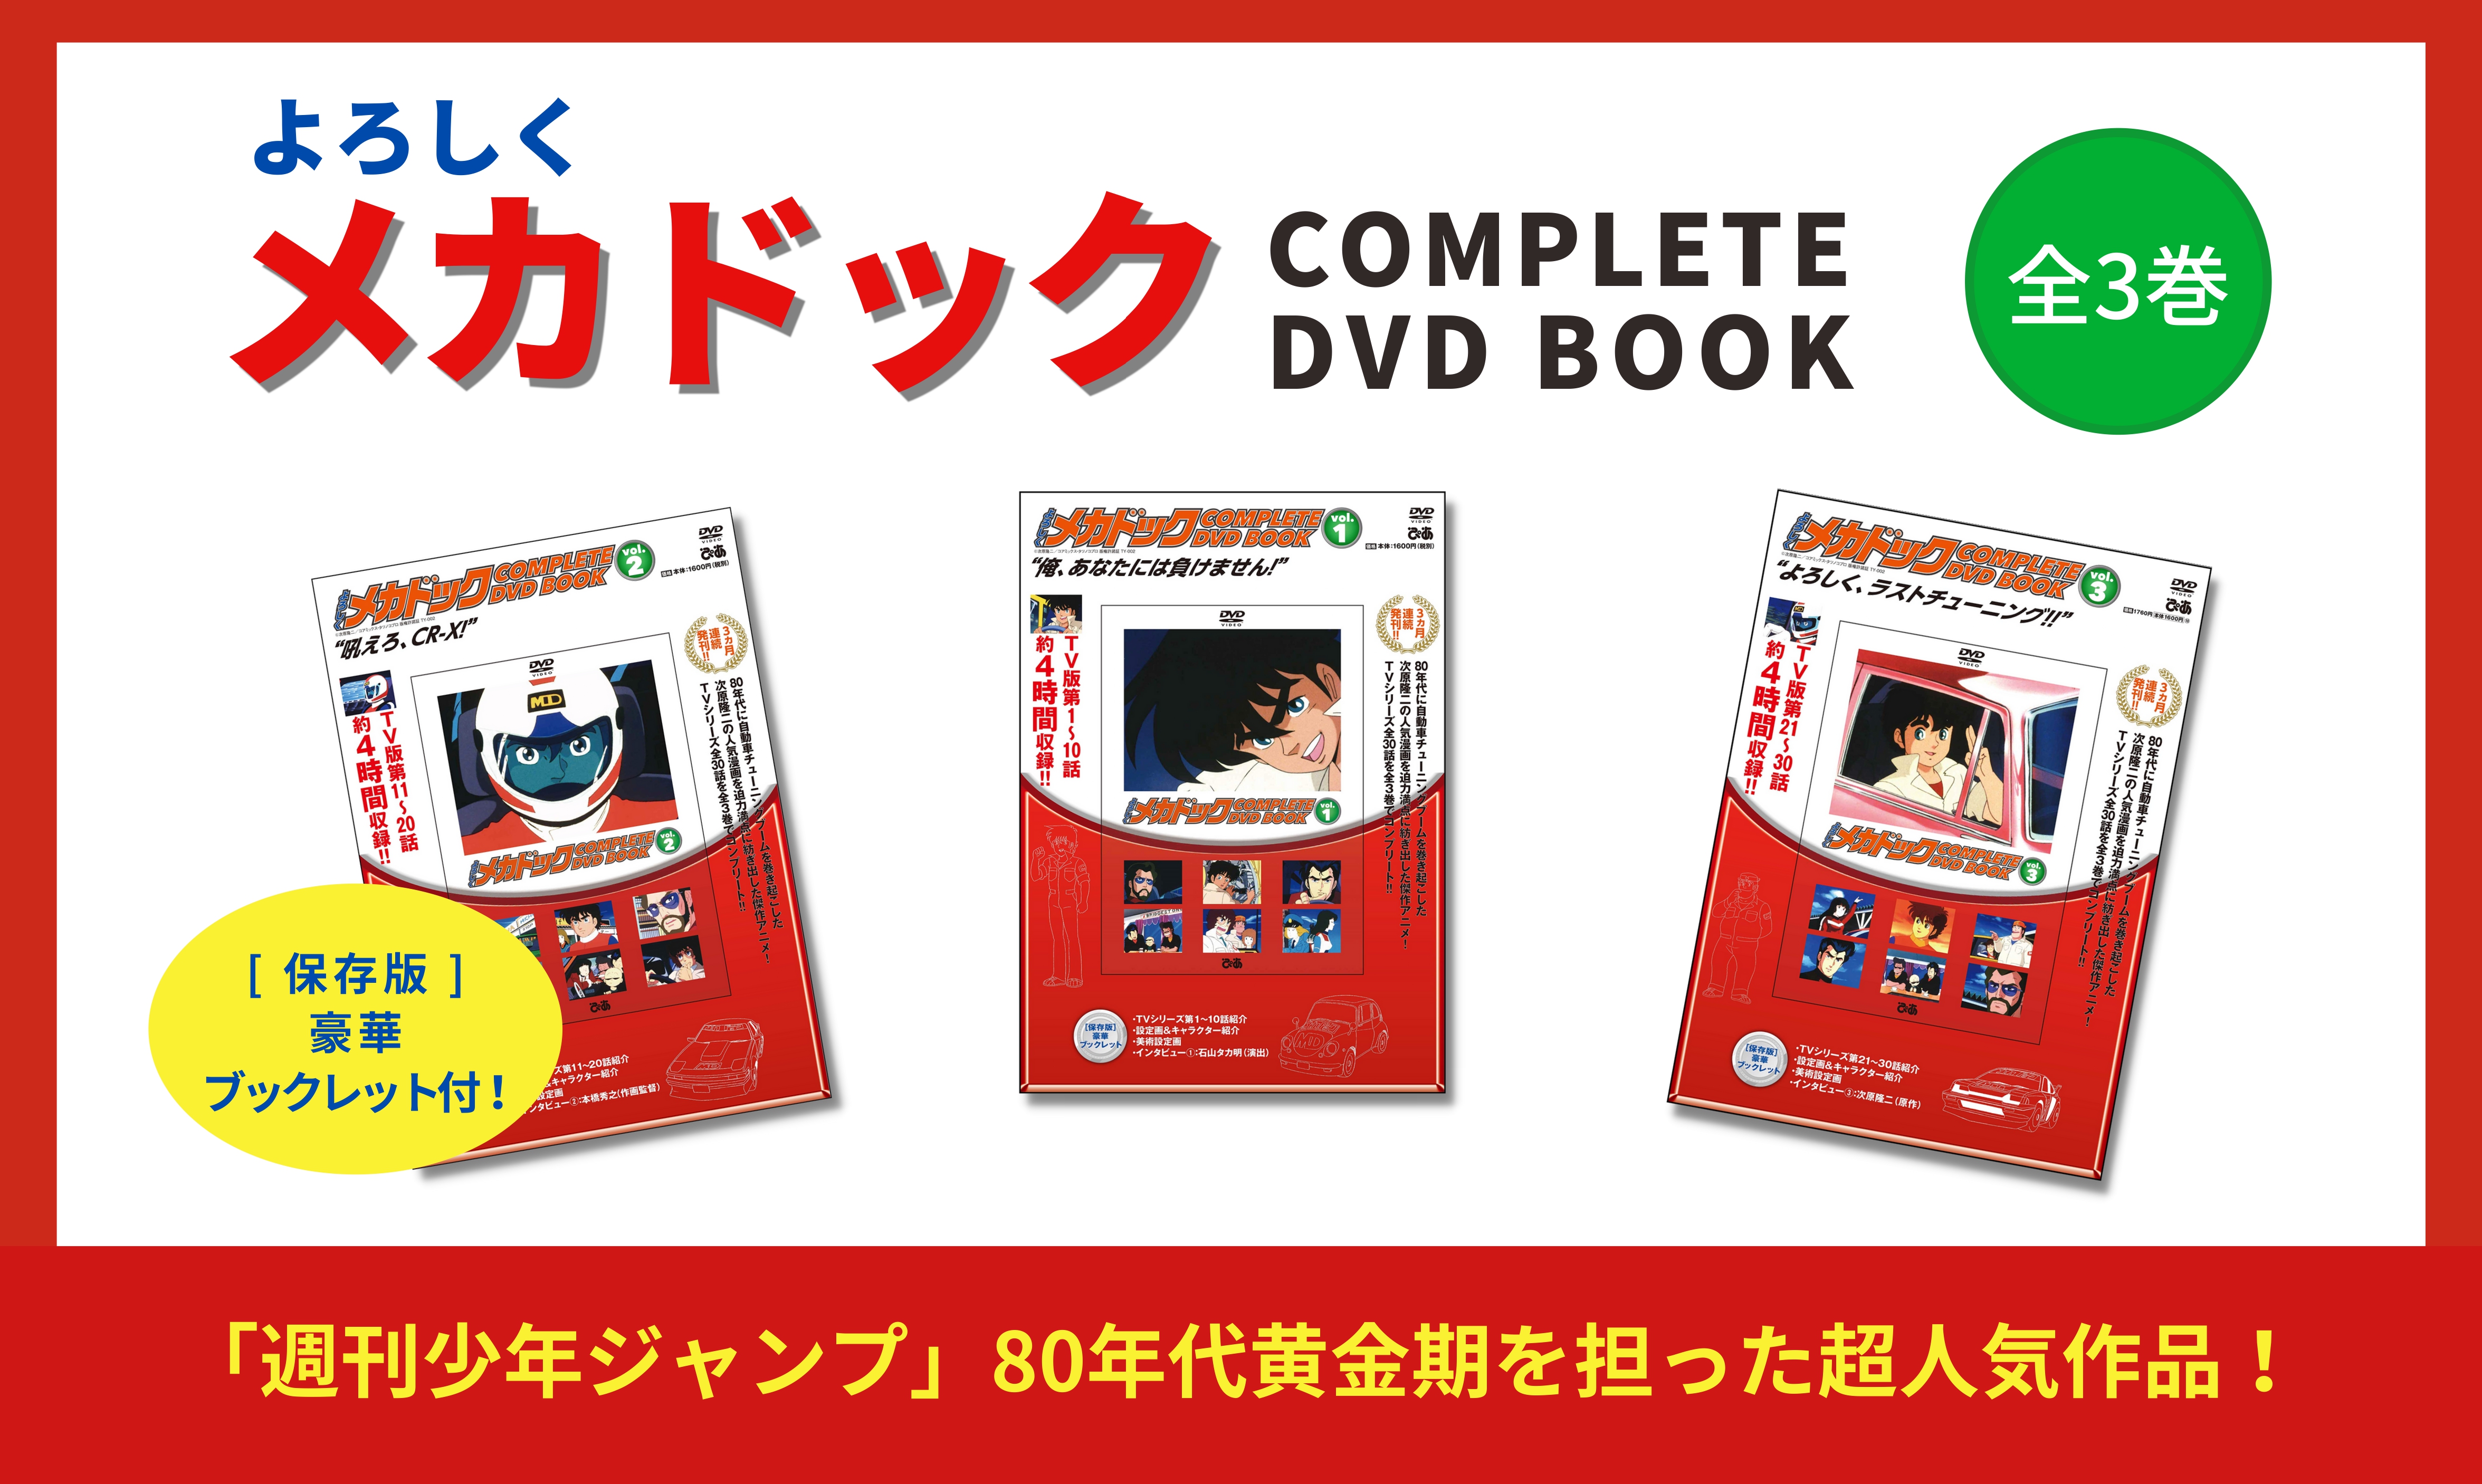 よろしくメカドック COMPLETE DVD BOOK」vol.1 - ぴあ株式会社